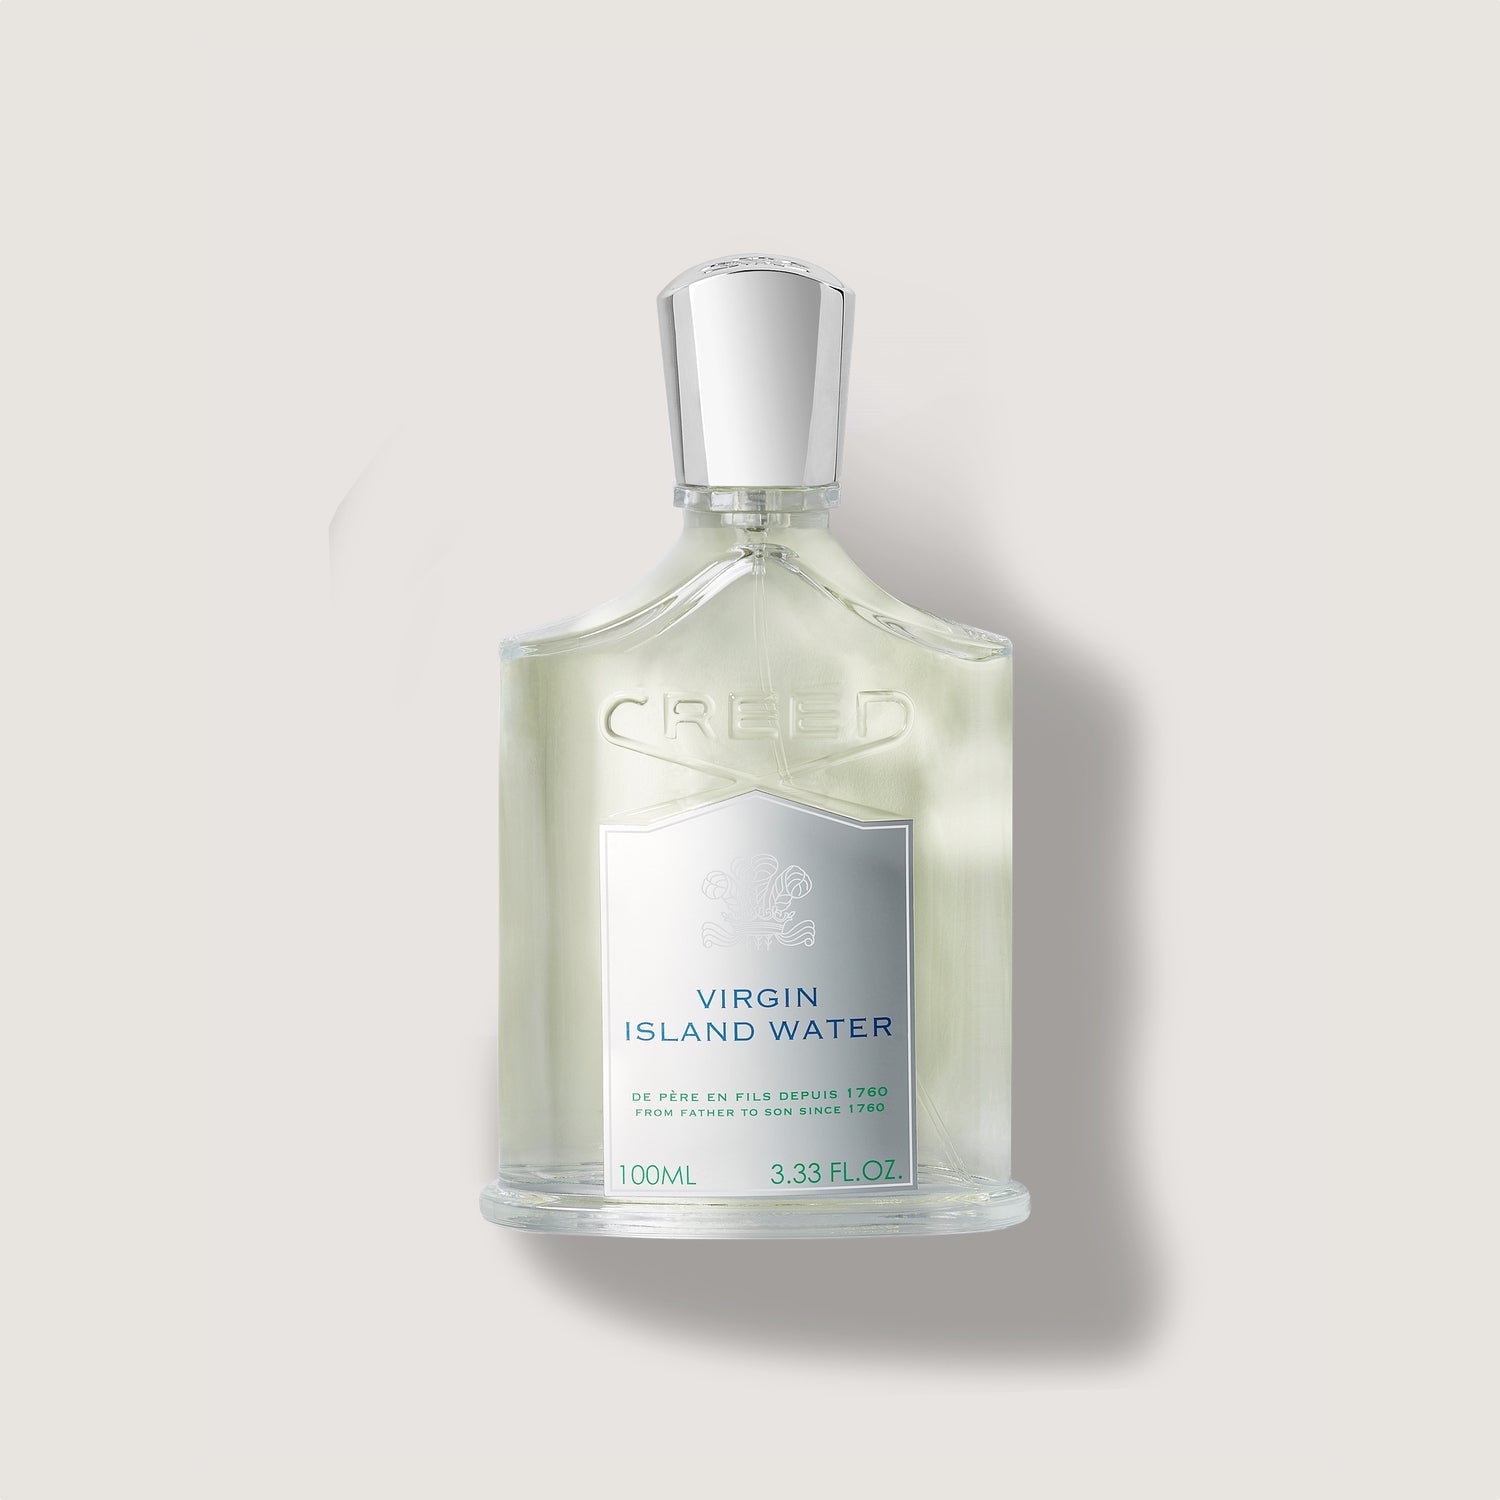 Dior Homme Eau de Toilette Cologne Fragrance for Men | Dior US